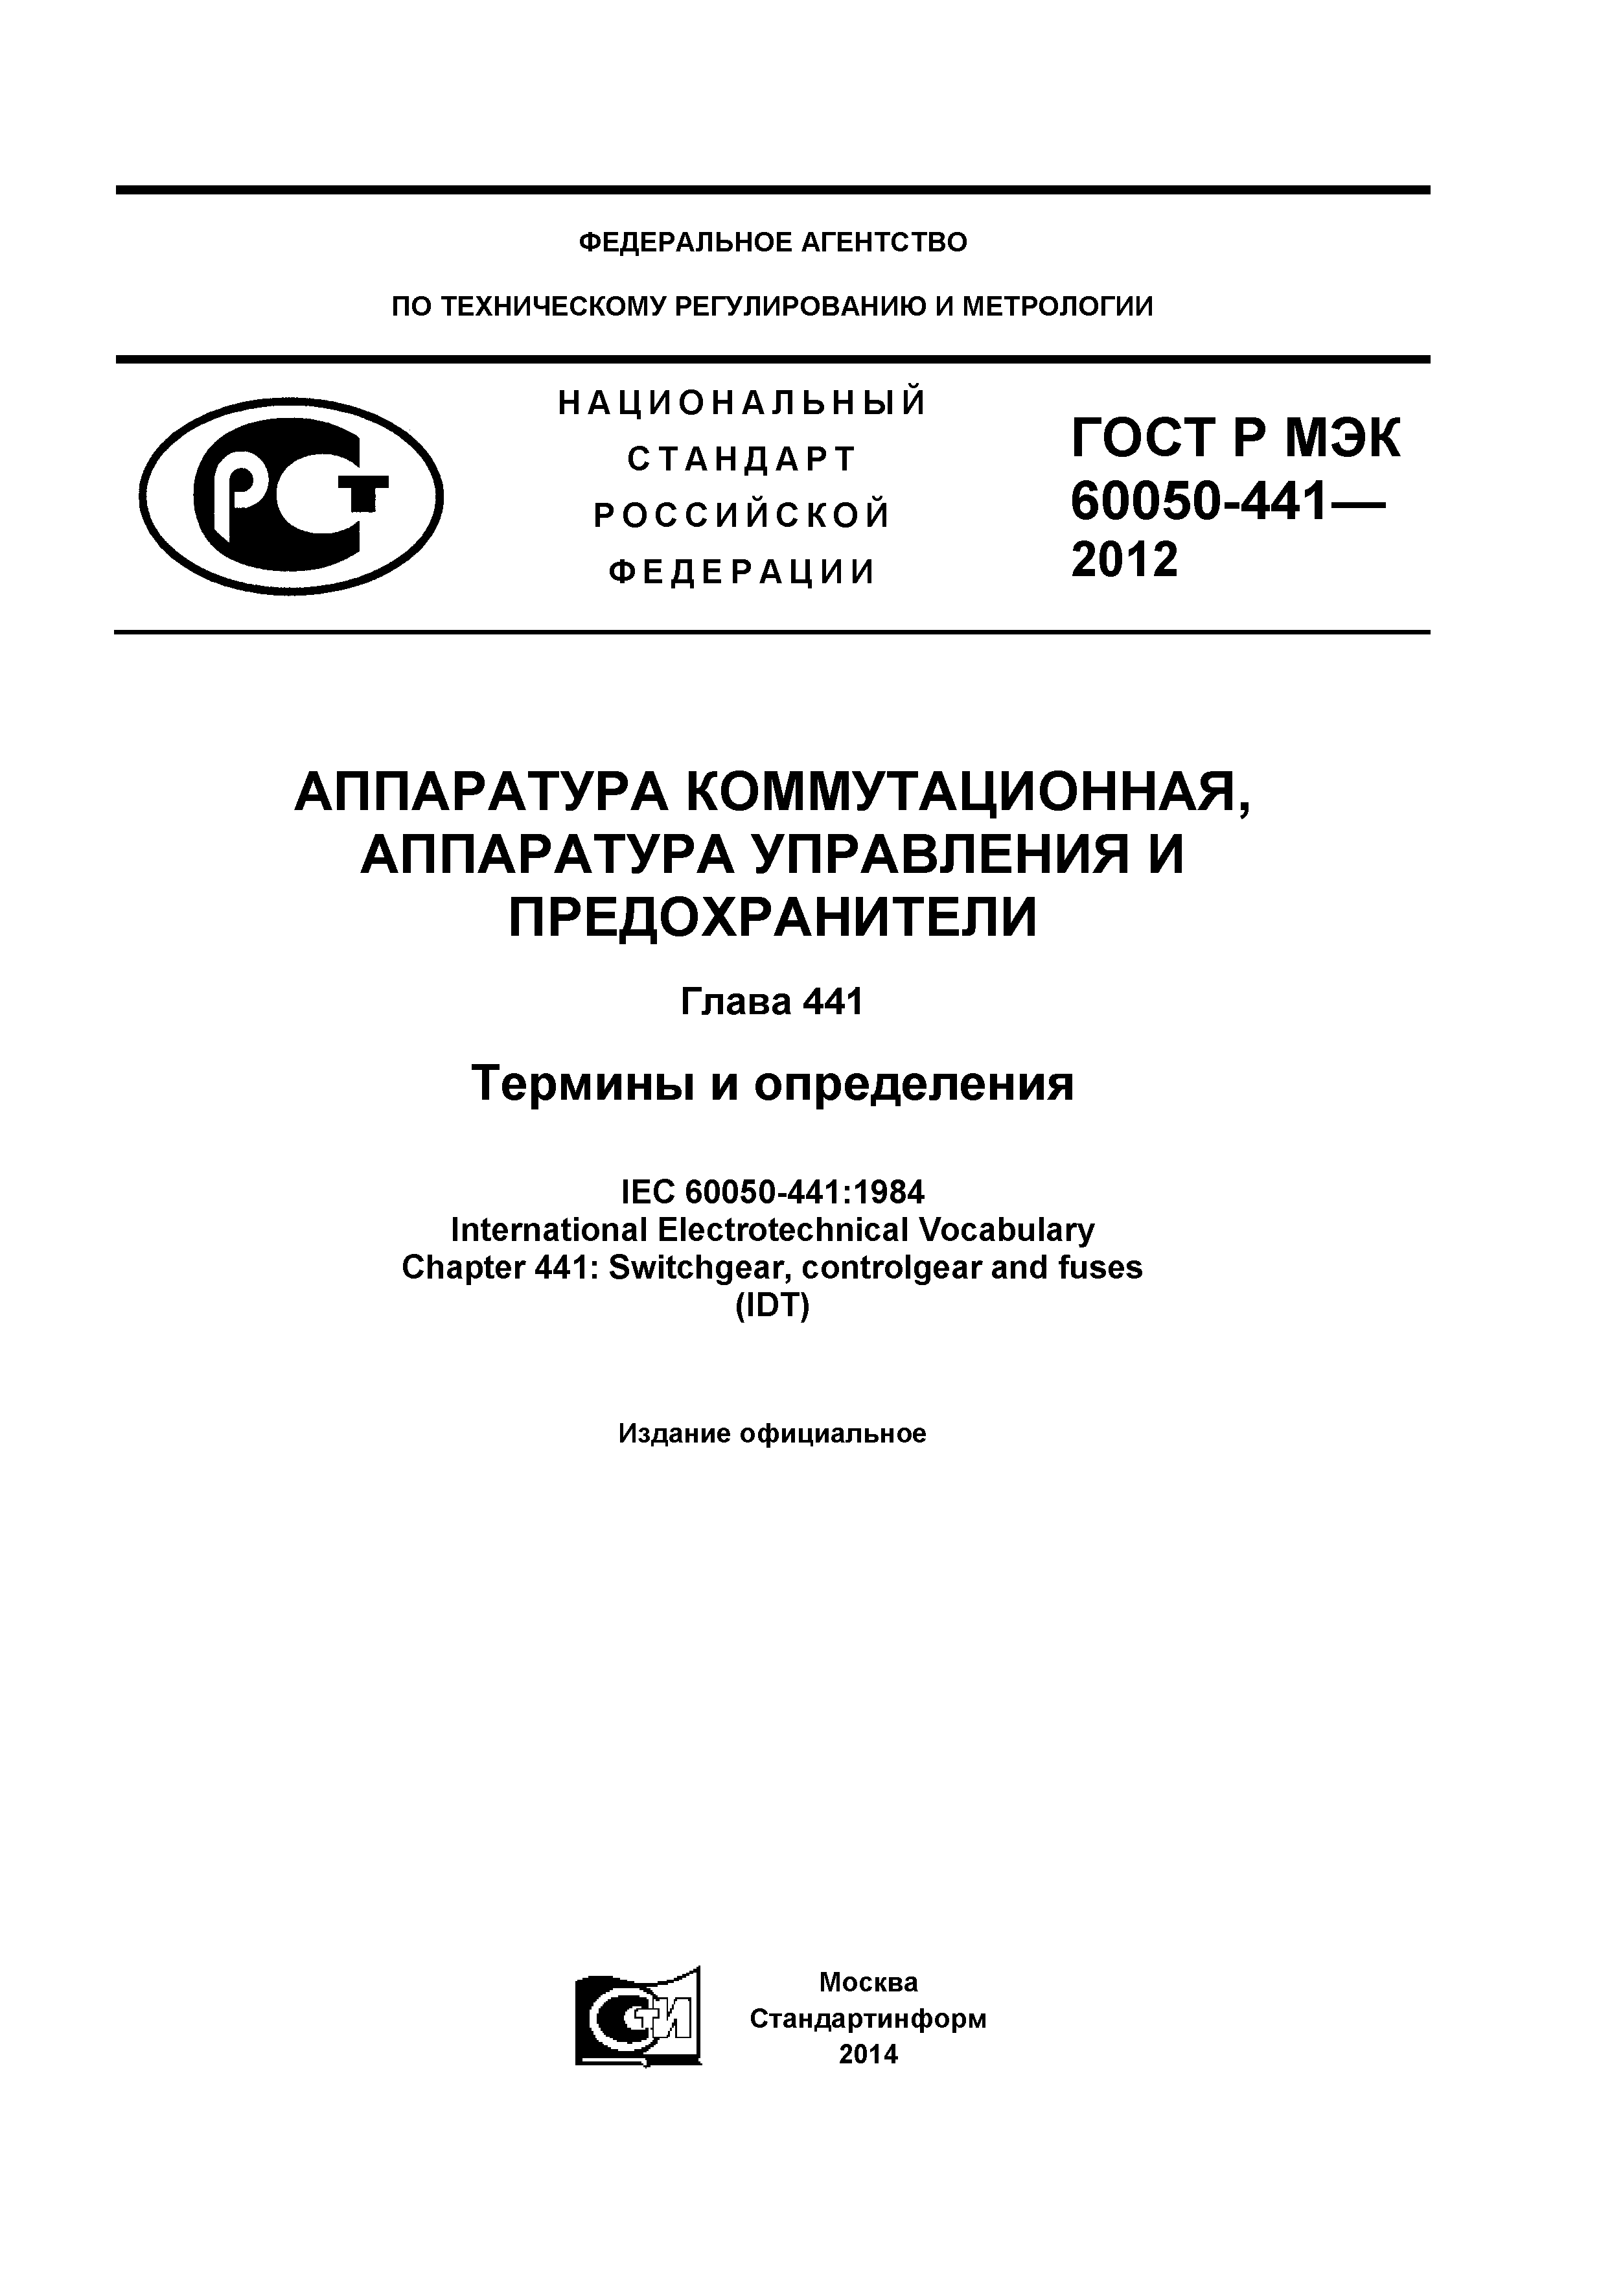 ГОСТ Р МЭК 60050-441-2012